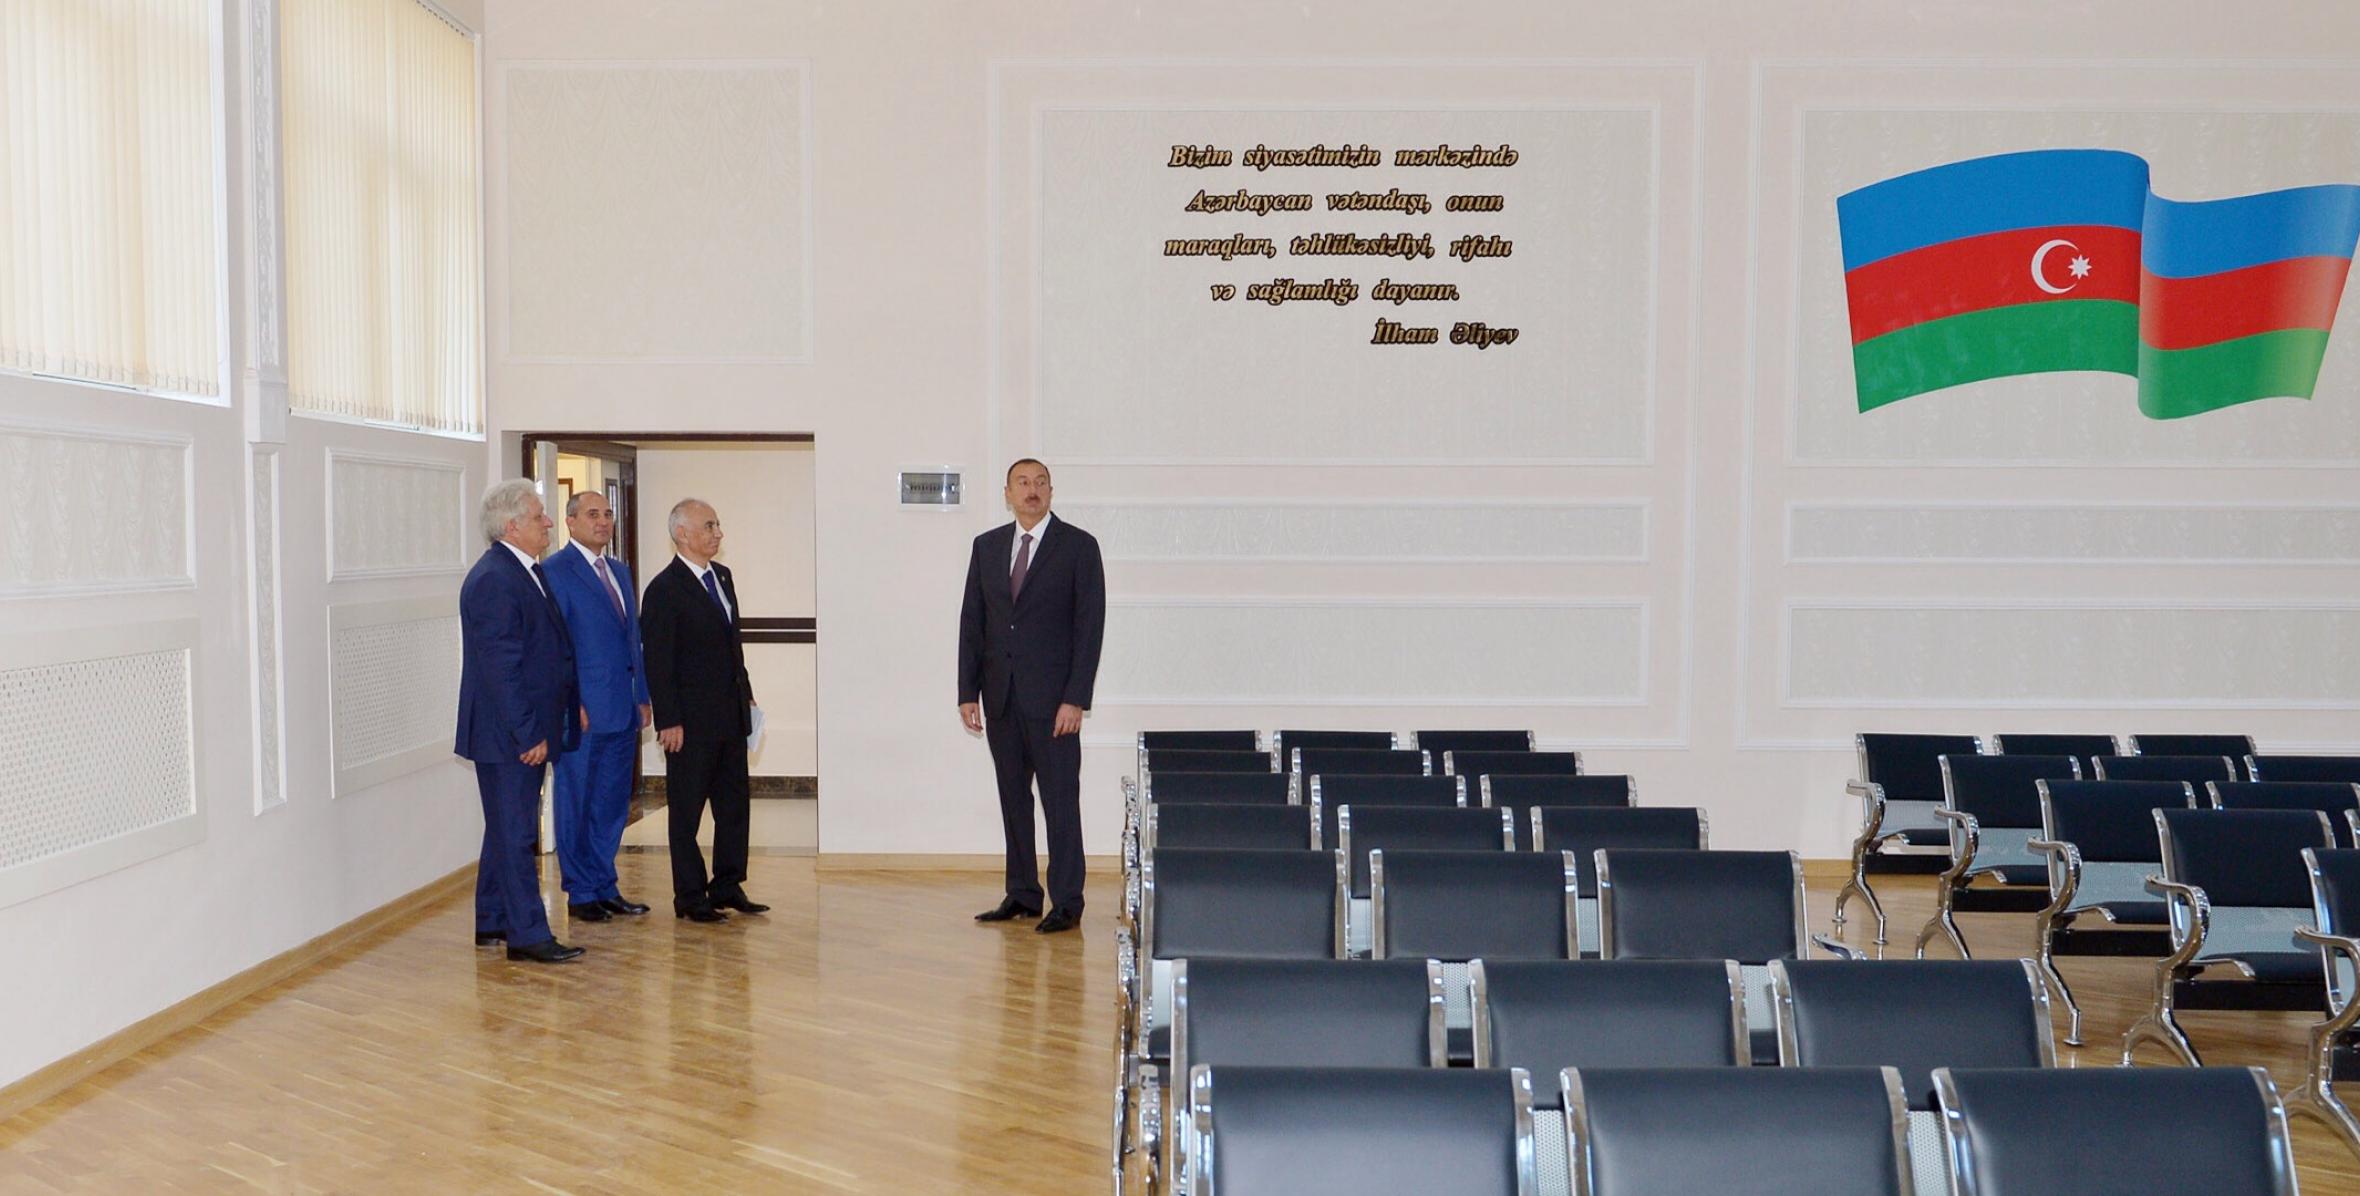 Ilham Aliyev reviewed schools No. 32 and No. 12 in Baku